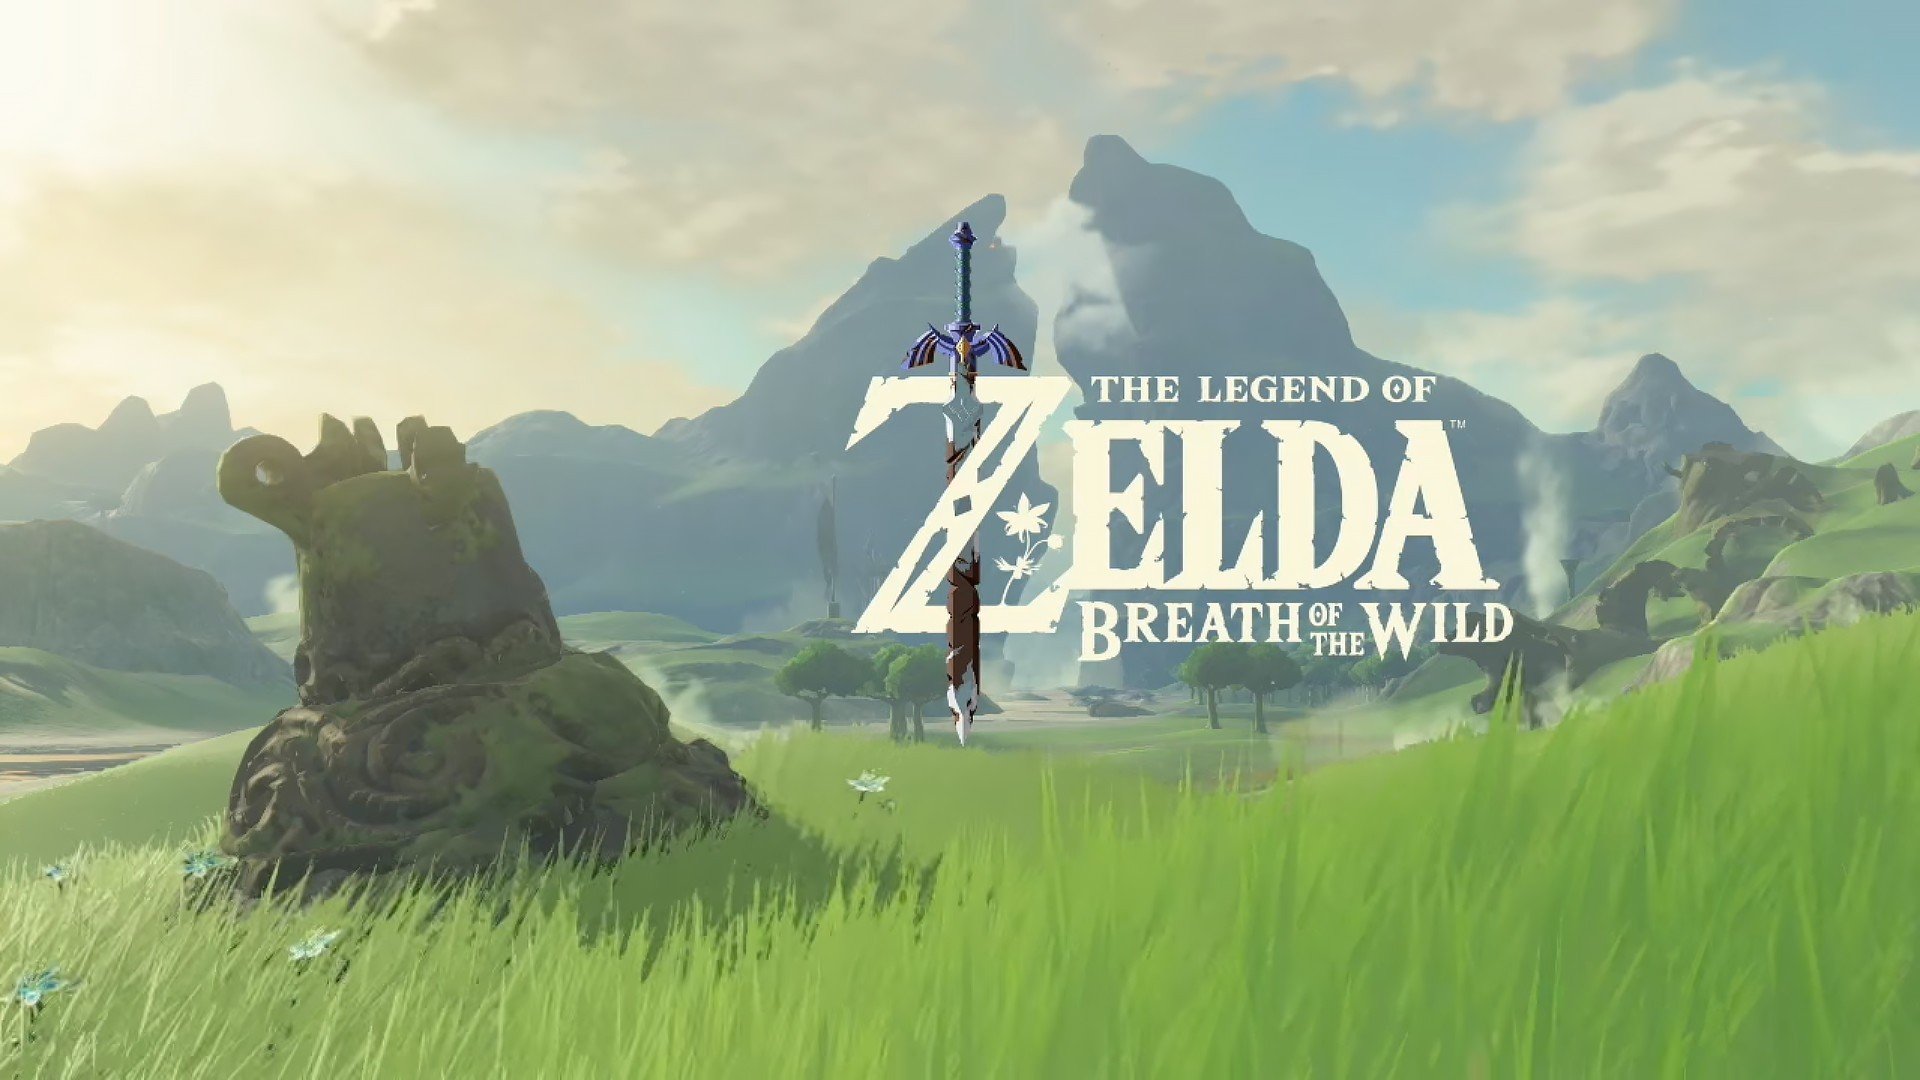 The Legend of Zelda, The Legend of Zelda Breath of the Wild, The Legend of Zelda: Breath of the Wild, Video games Wallpaper